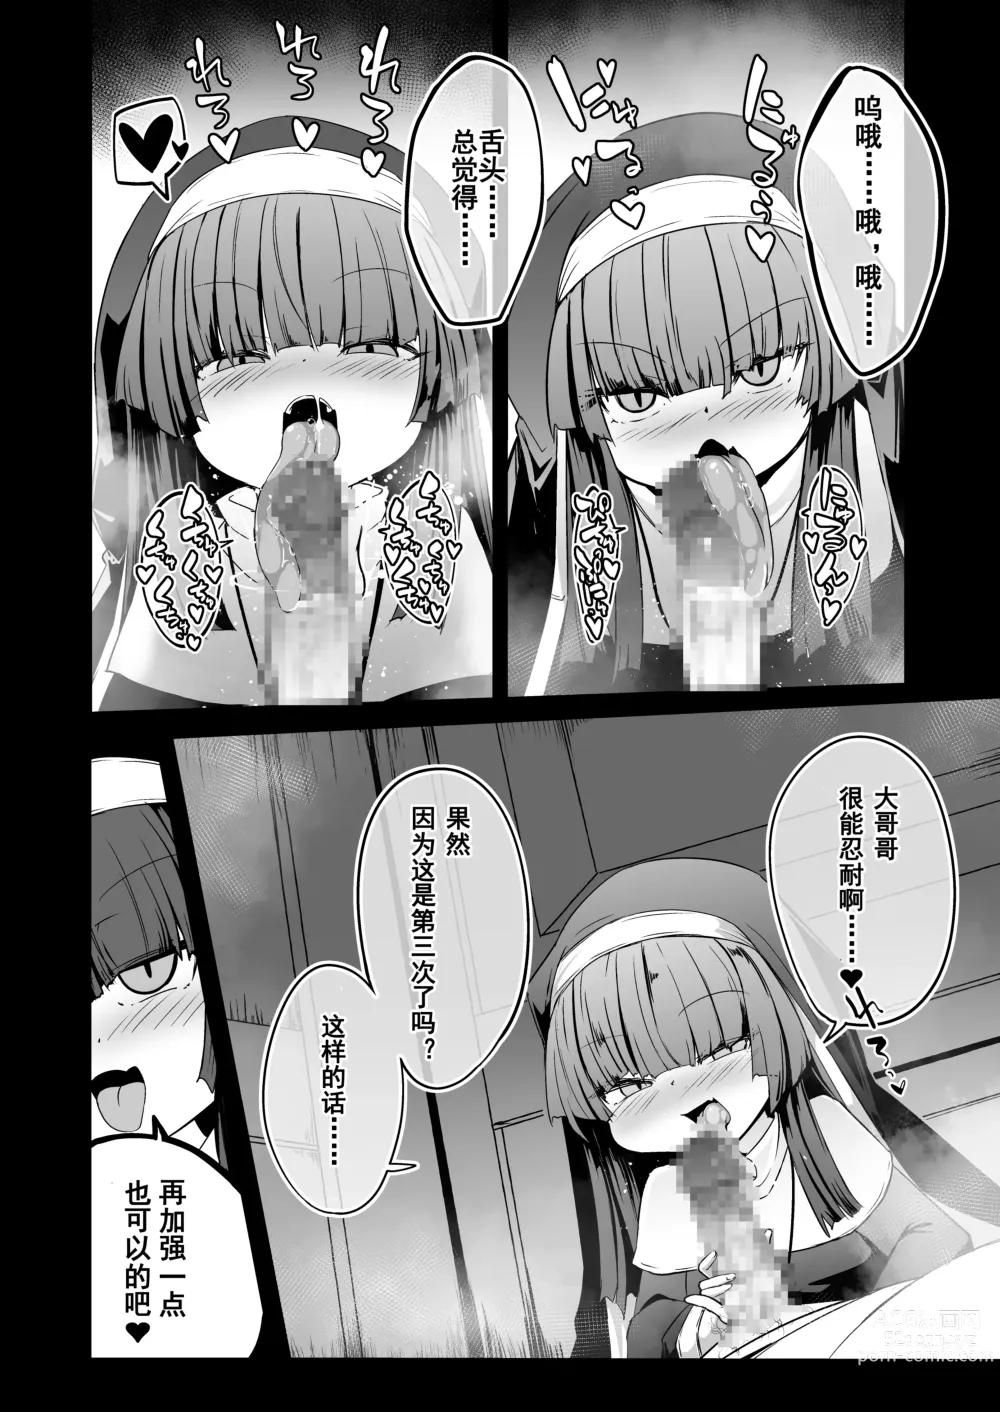 Page 22 of doujinshi Zangeshitsu no Chiisana Ero Sister 2